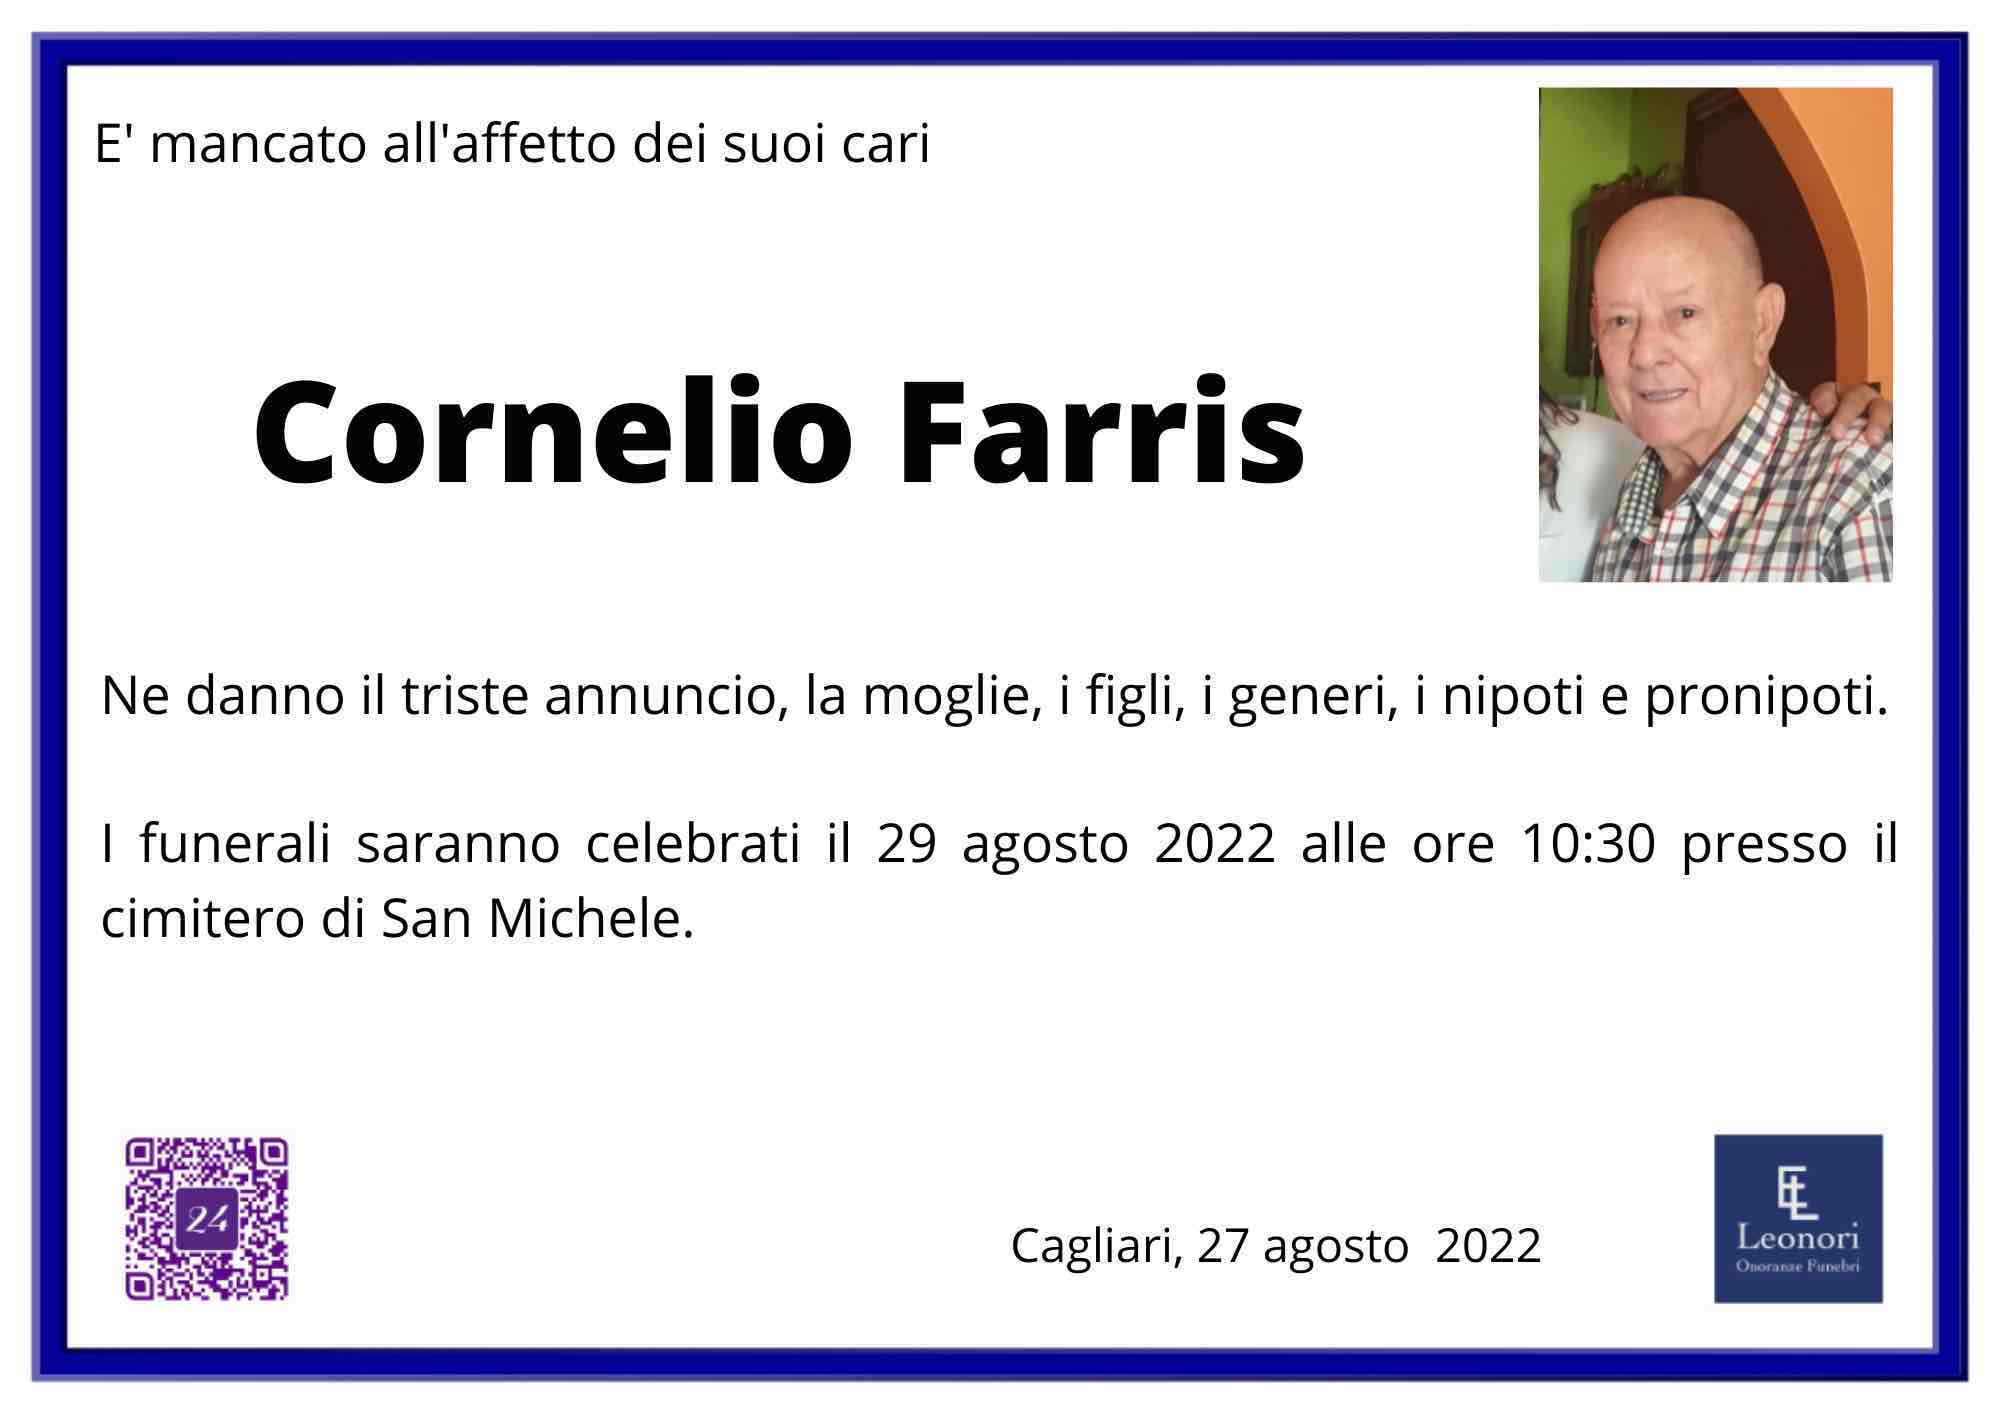 Cornelio Farris